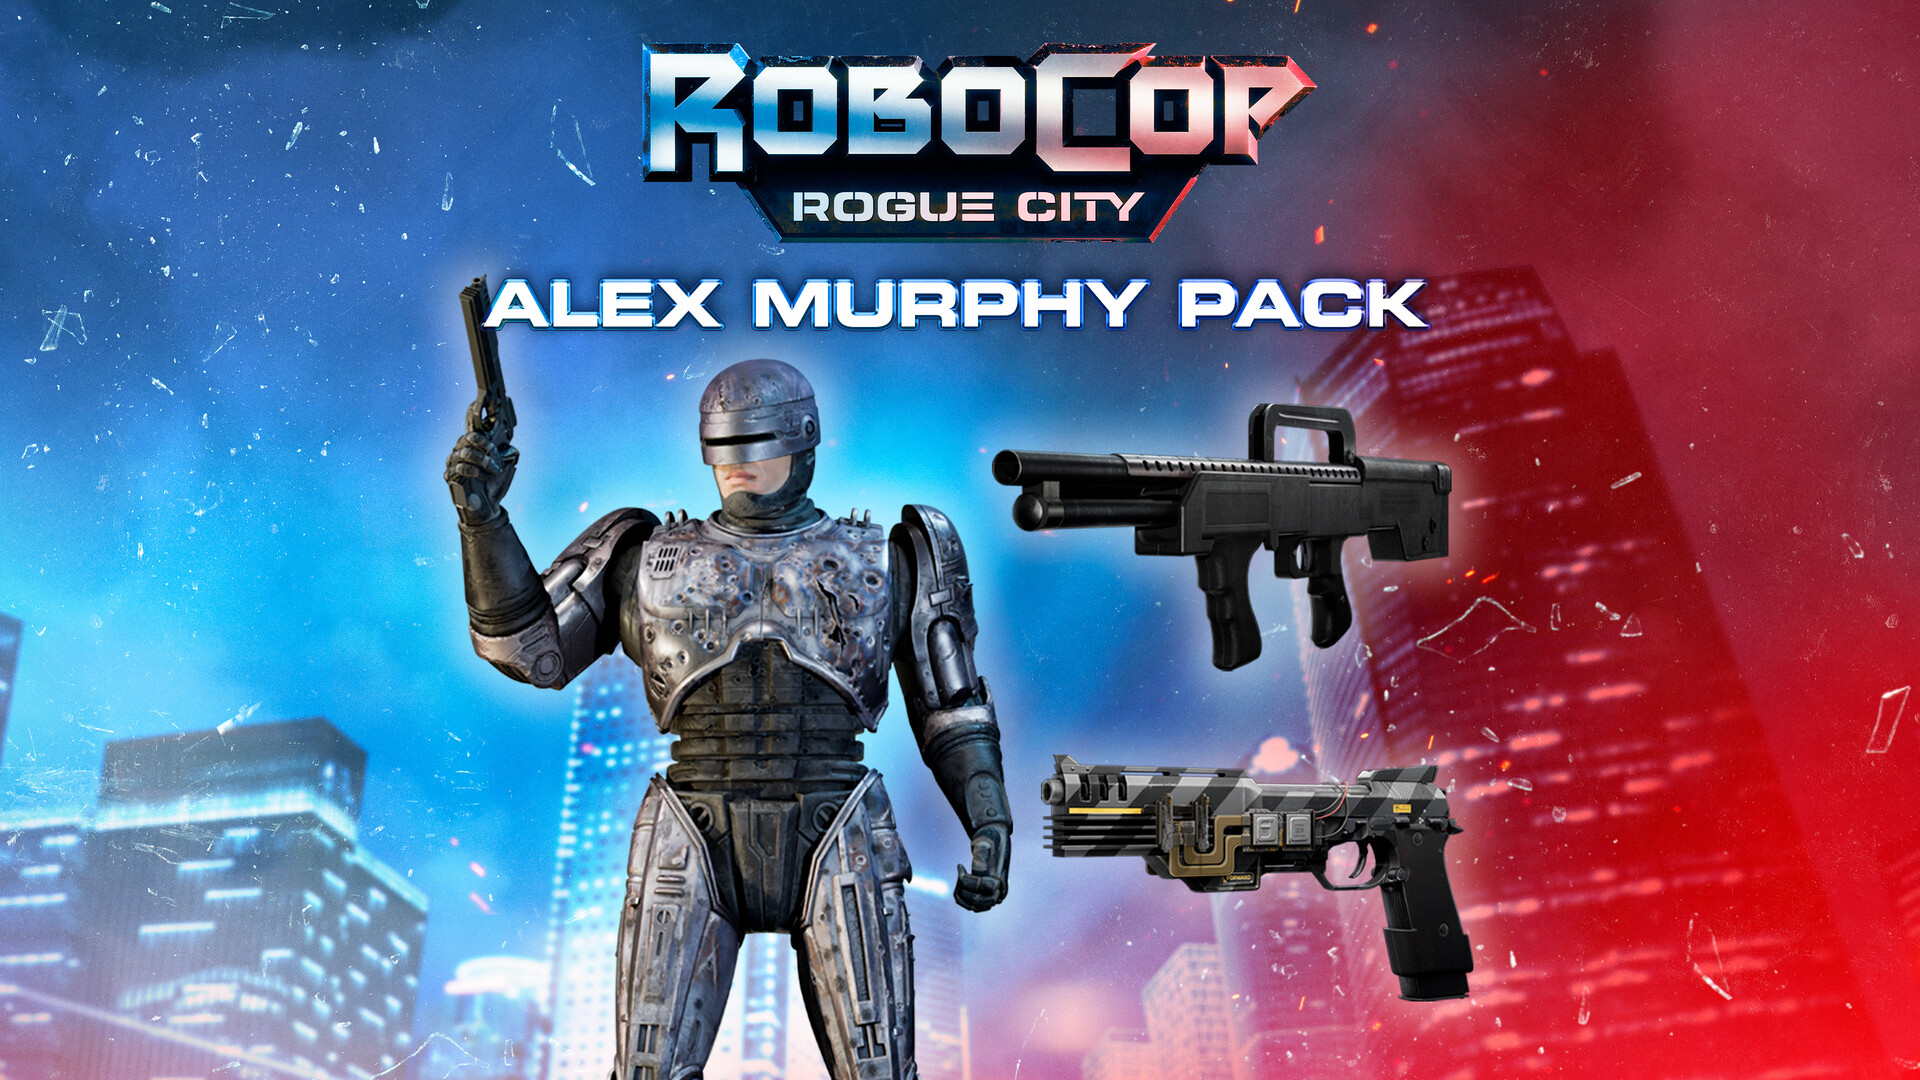 RoboCop - Edición Alex Murphy  Descárgalo y cómpralo hoy - Epic